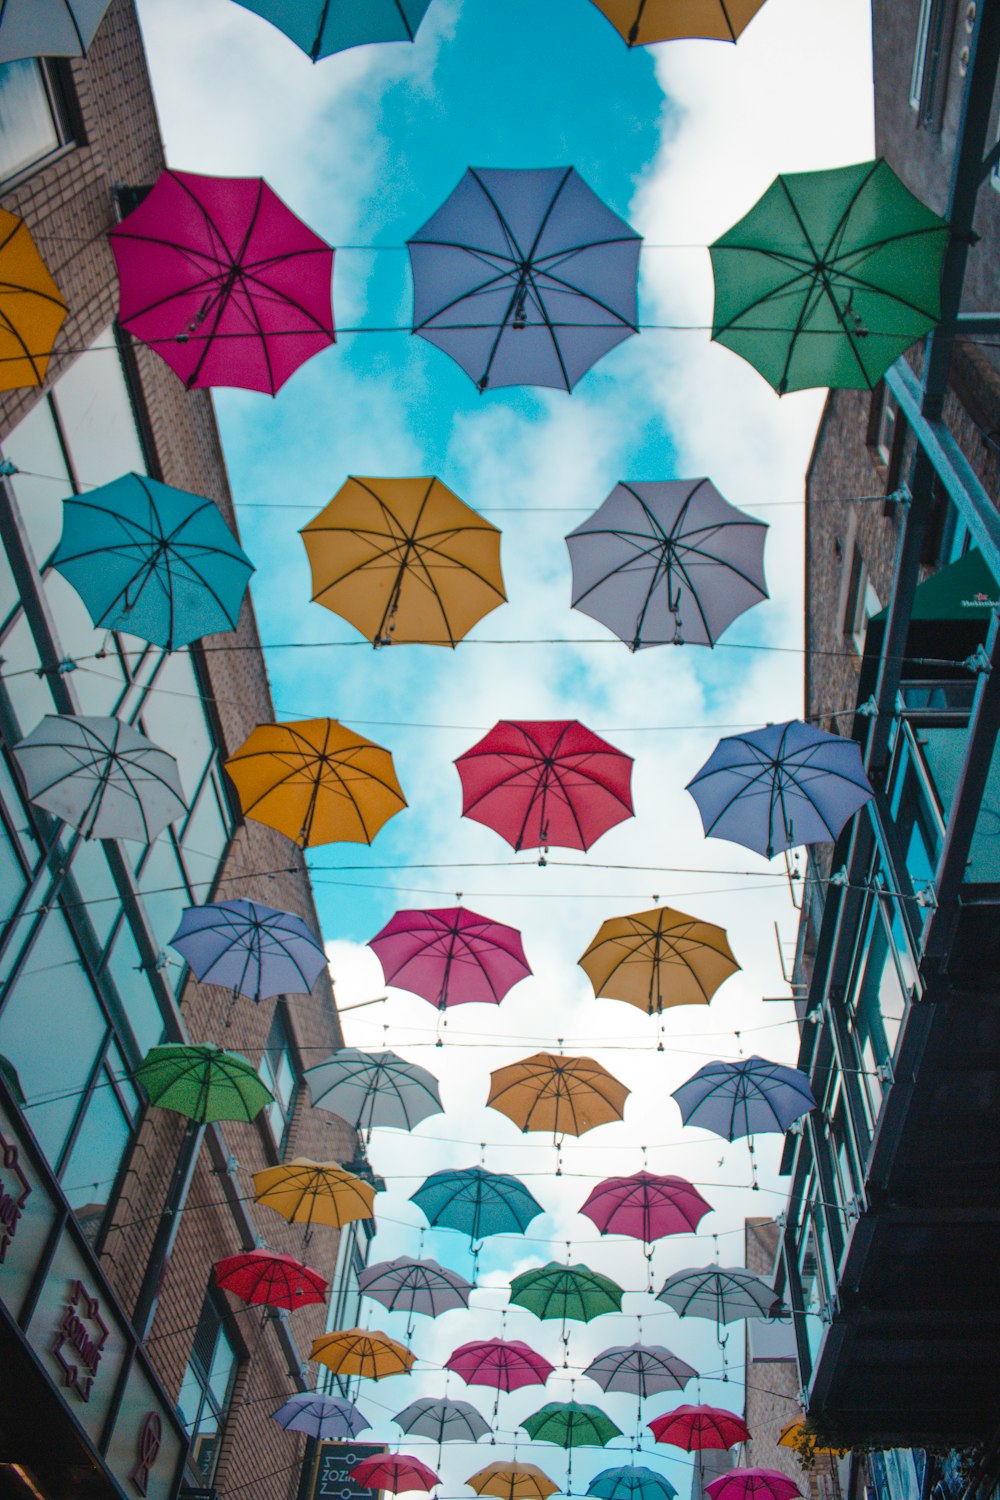 floating umbrellas